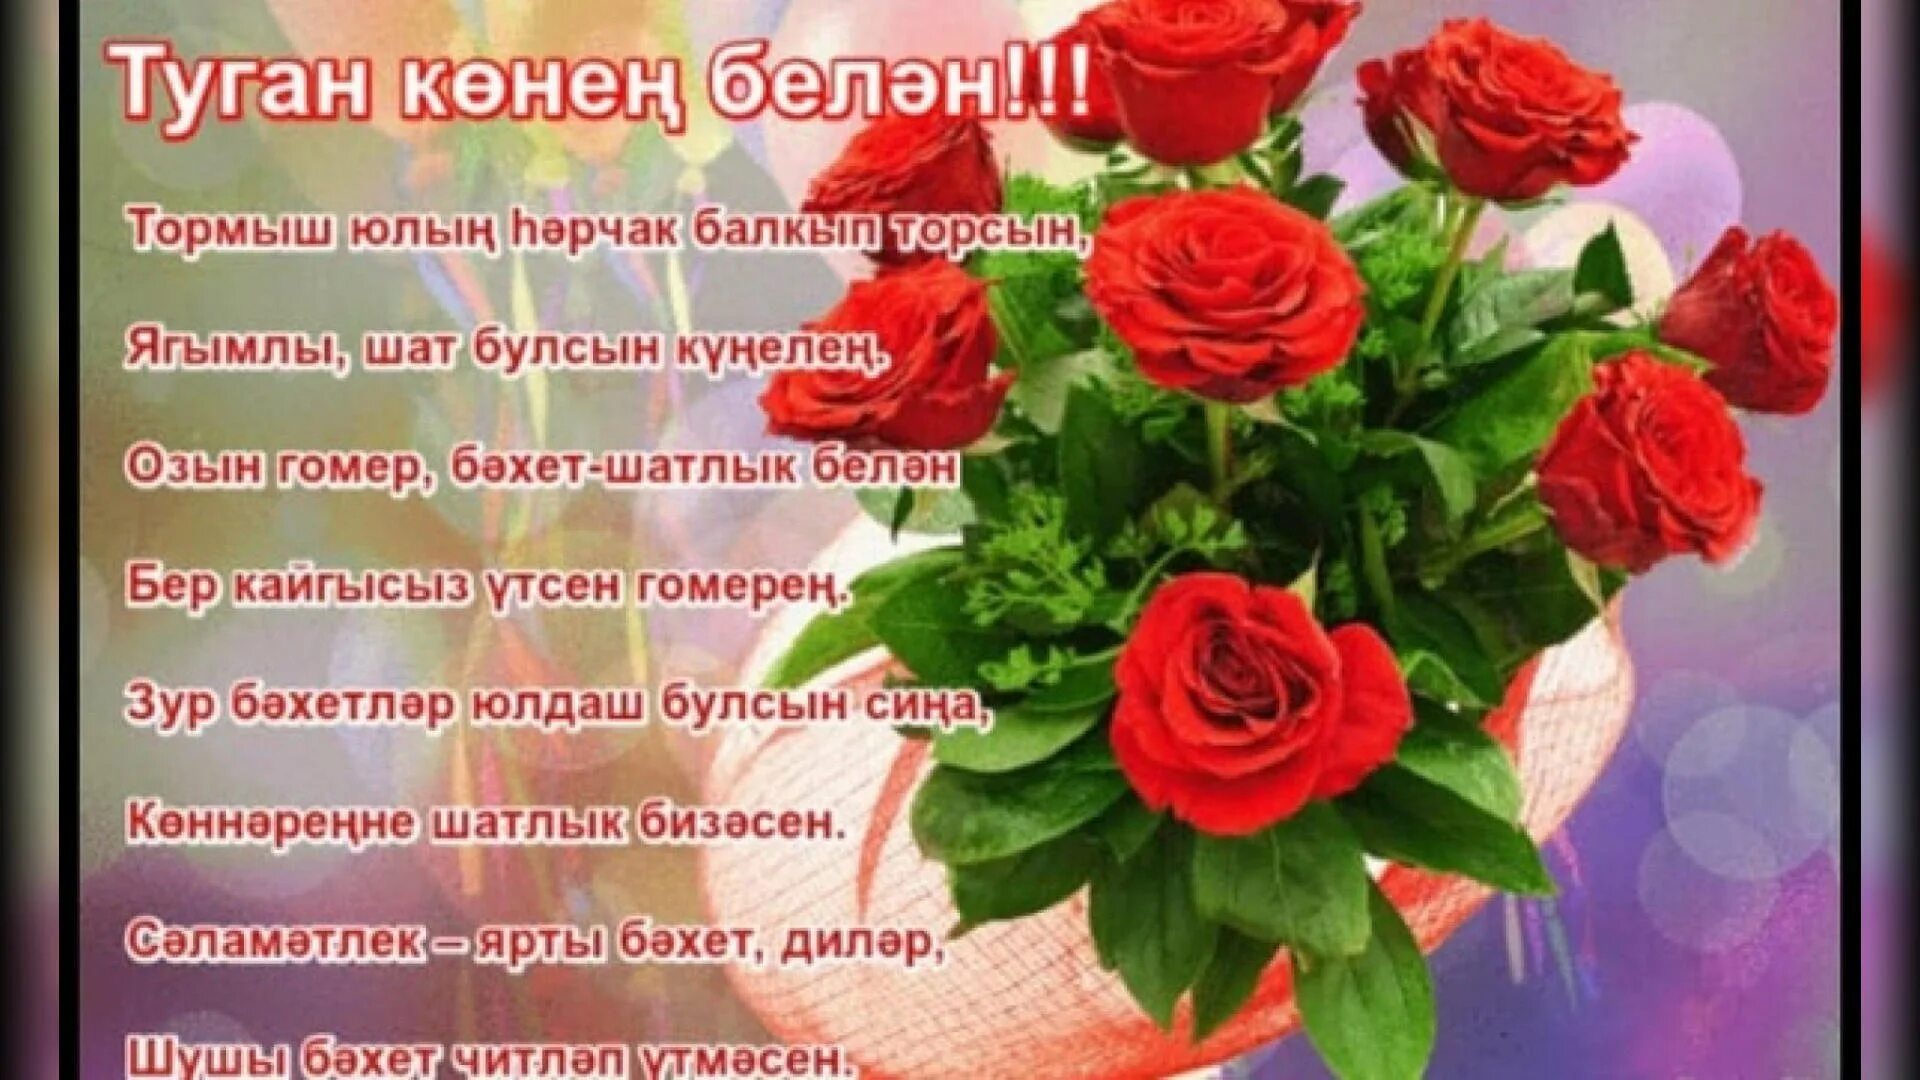 Туган конен белэн классташым. Татарские поздравления с днем рождения. Поздравления с днём рождения на татарском языке. Поздравления с днём рождения женщине на татарском языке. Поздравления с днём рождения женщине на татарском.